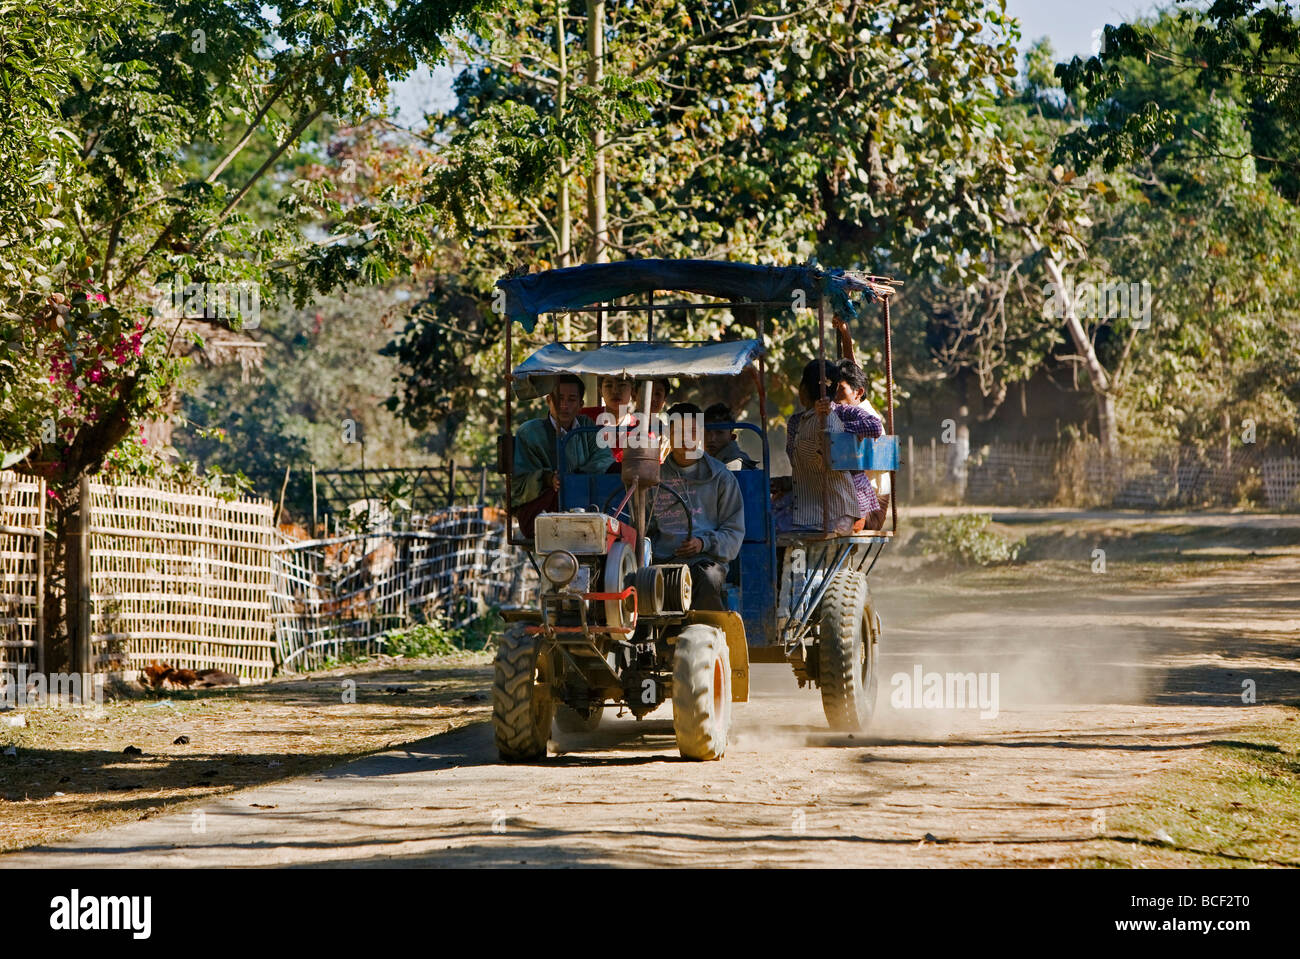 Le Myanmar, Birmanie, Mrauk U fabriqués en Chine un ensemble de tracteur et remorque sur la route de Mrauk U. Banque D'Images